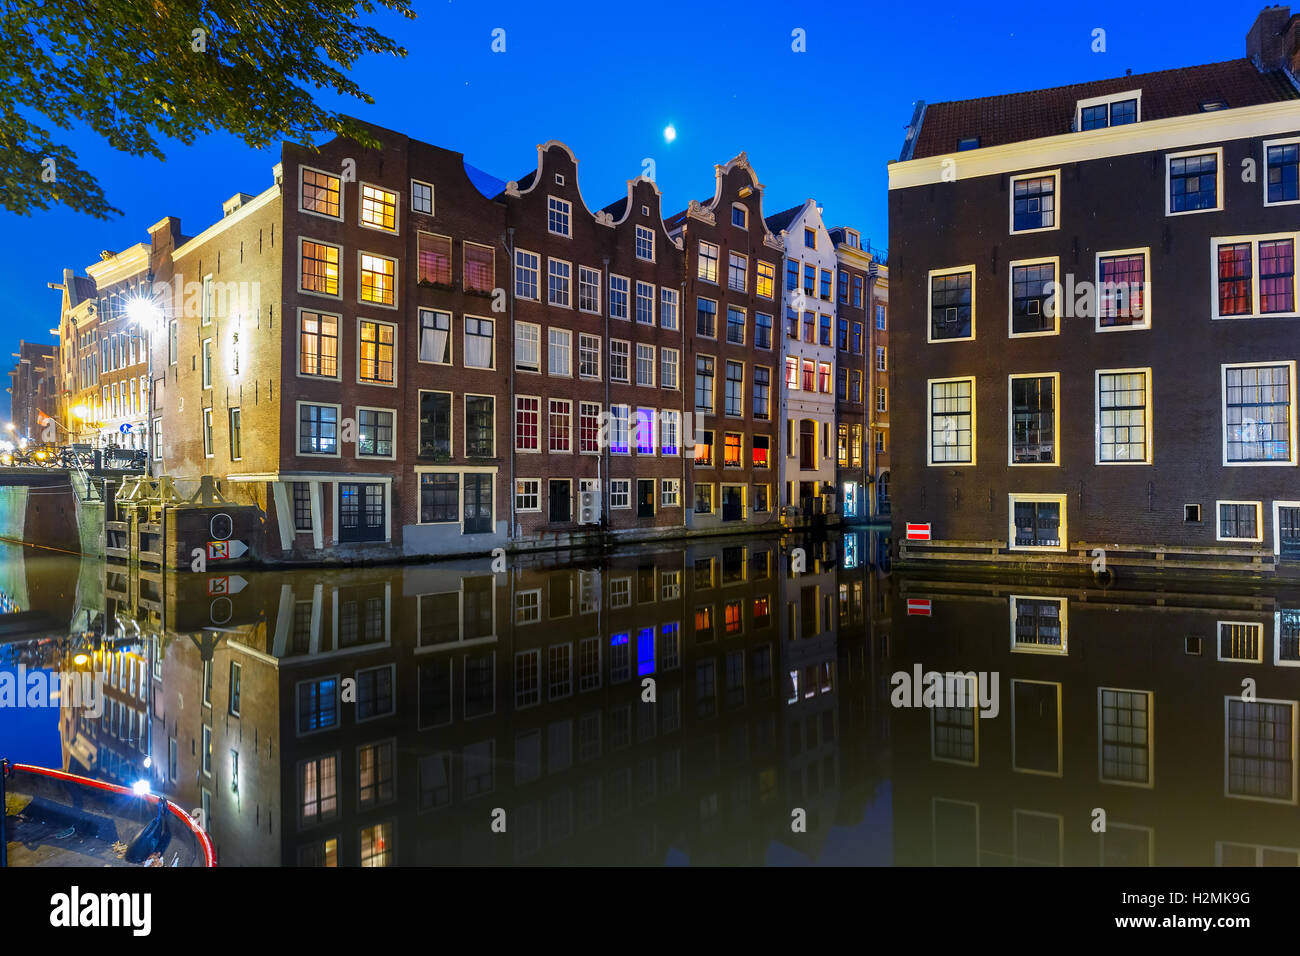 Nuit maison typique hollandaise, Amsterdam, Pays-Bas. Banque D'Images